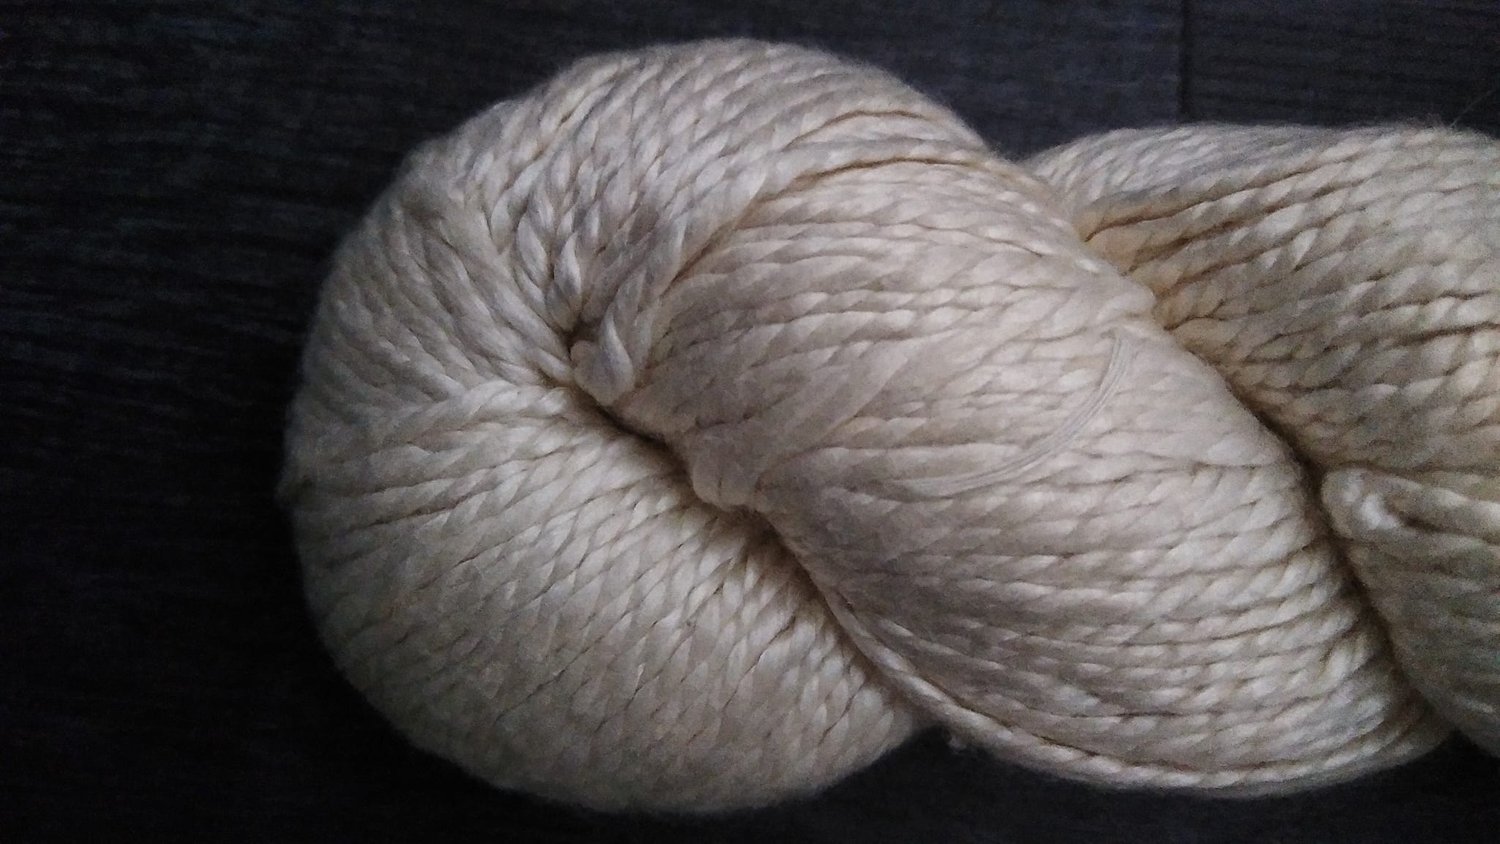 100% royal baby alpaca yarn on cone, undyed alpaca yarn, lace yarn for  knitting, weaving and crochet, per 100g